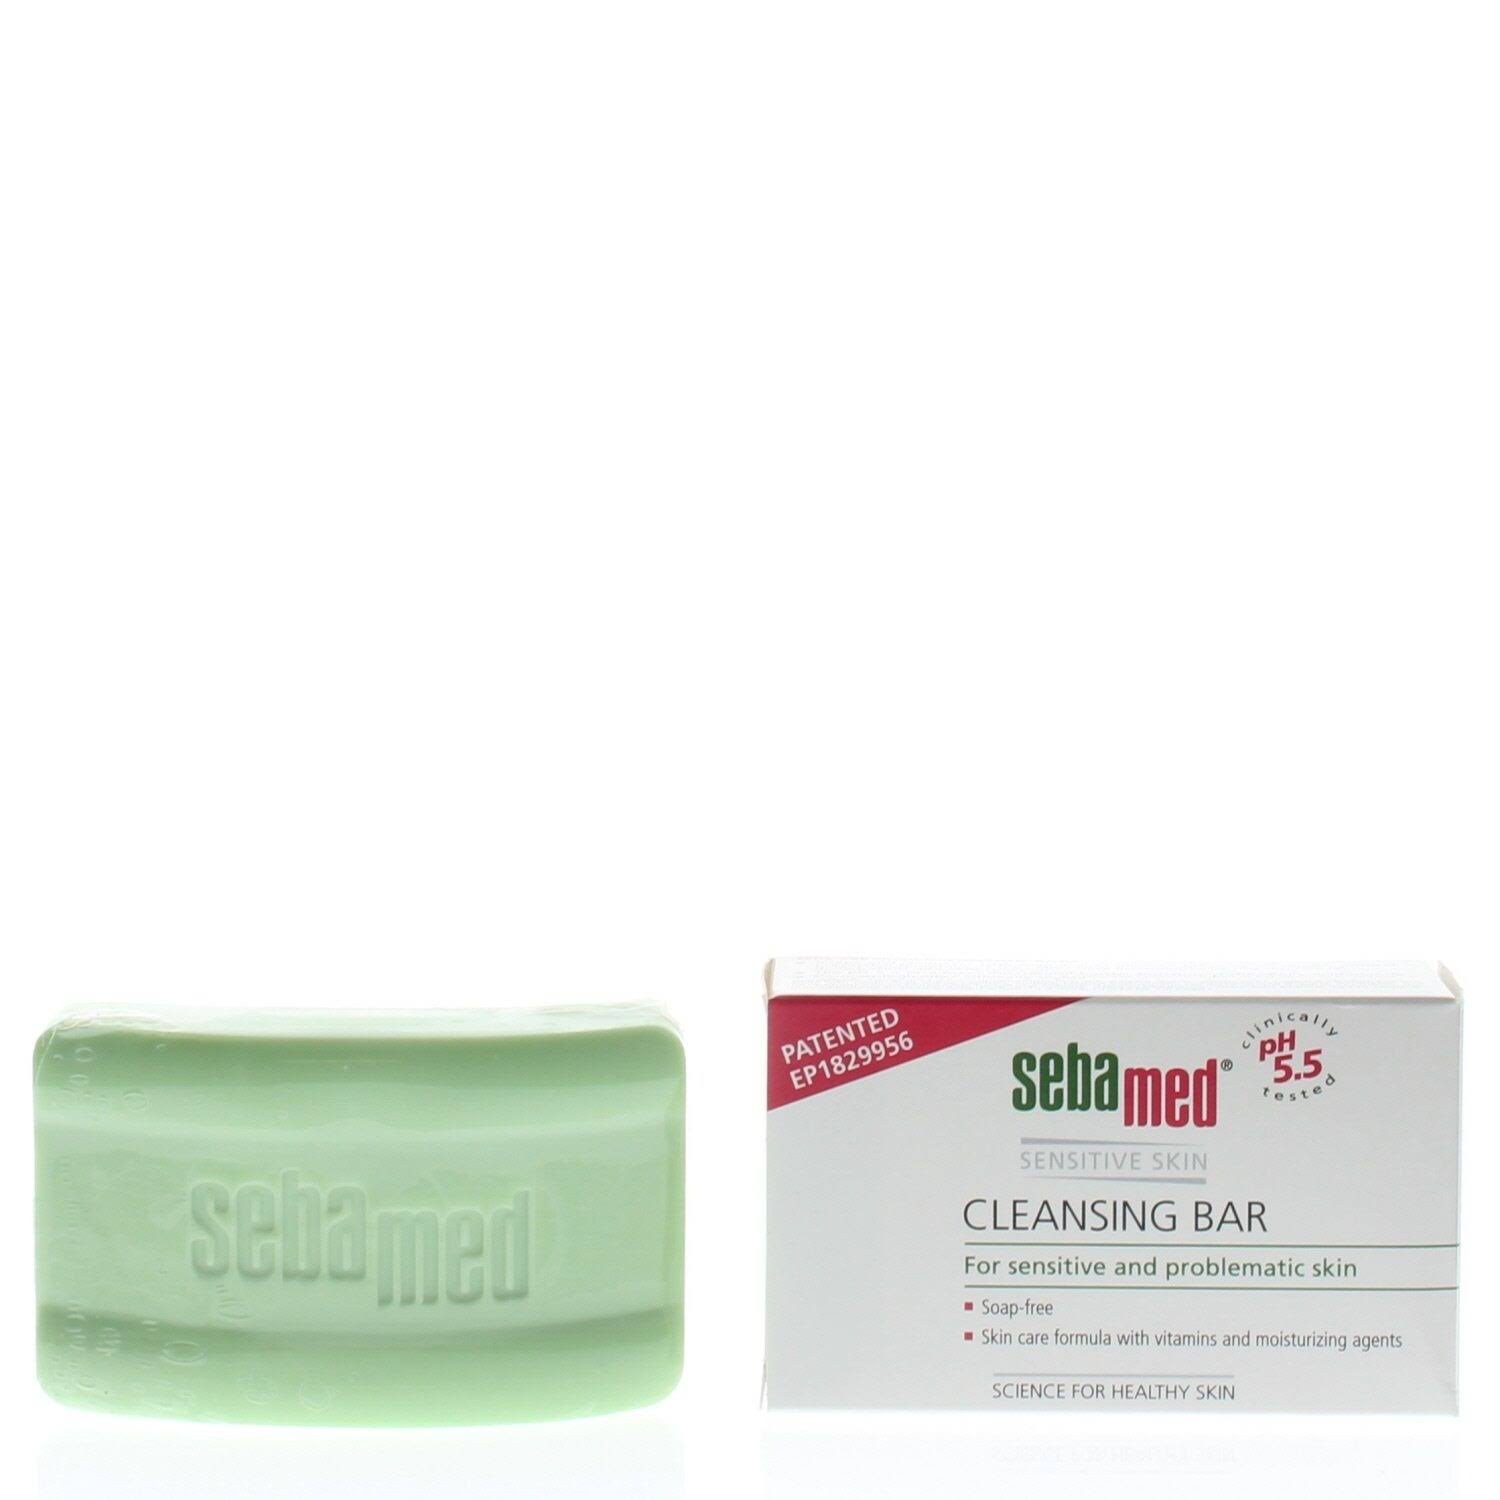 Sebamed Soap Free Cleansing Bar - 100g